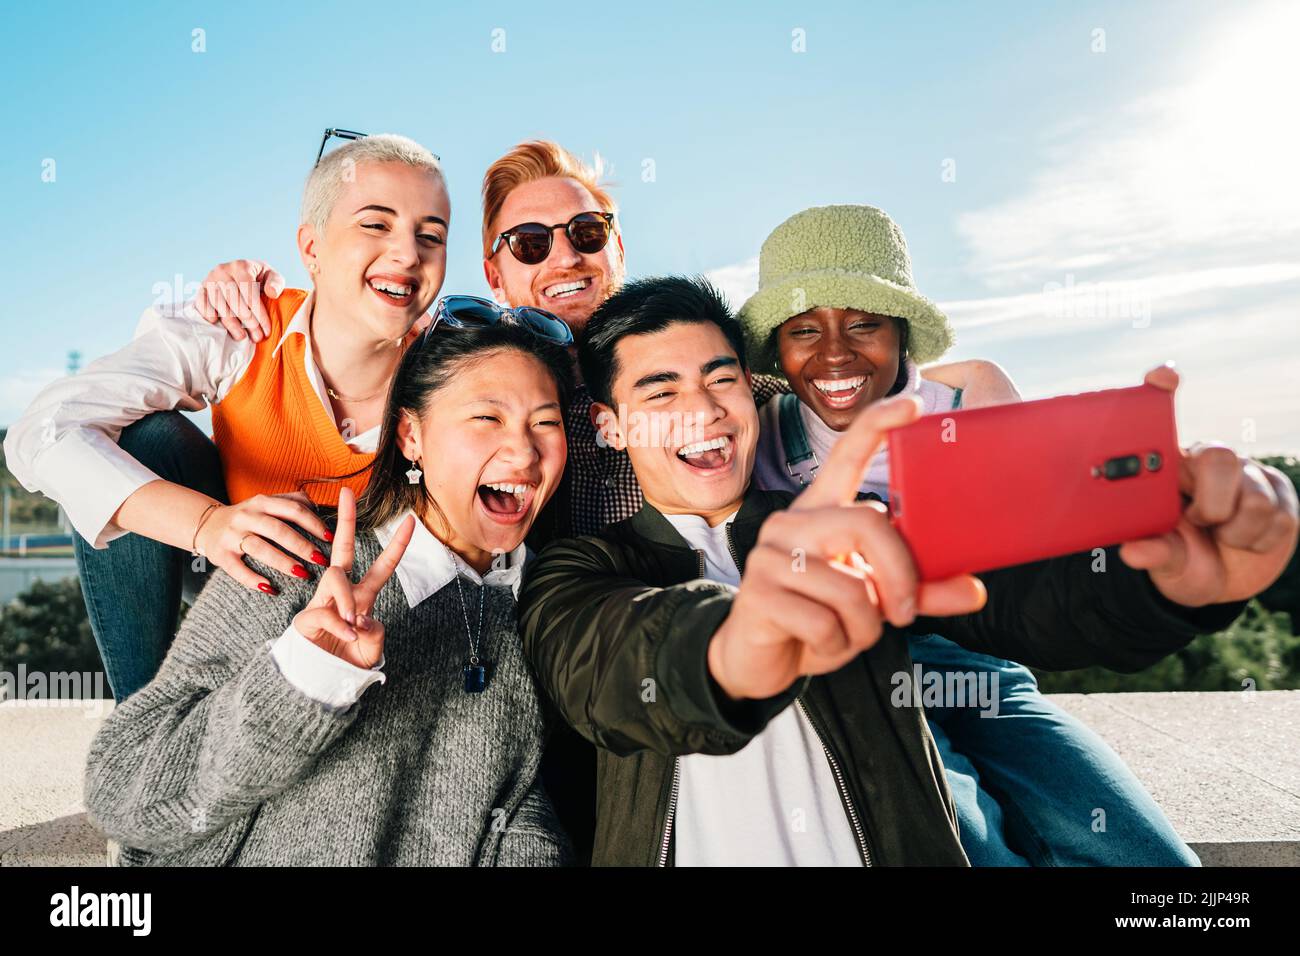 Groupe de jeunes amis multiethniques prenant une photo avec un smartphone. Banque D'Images